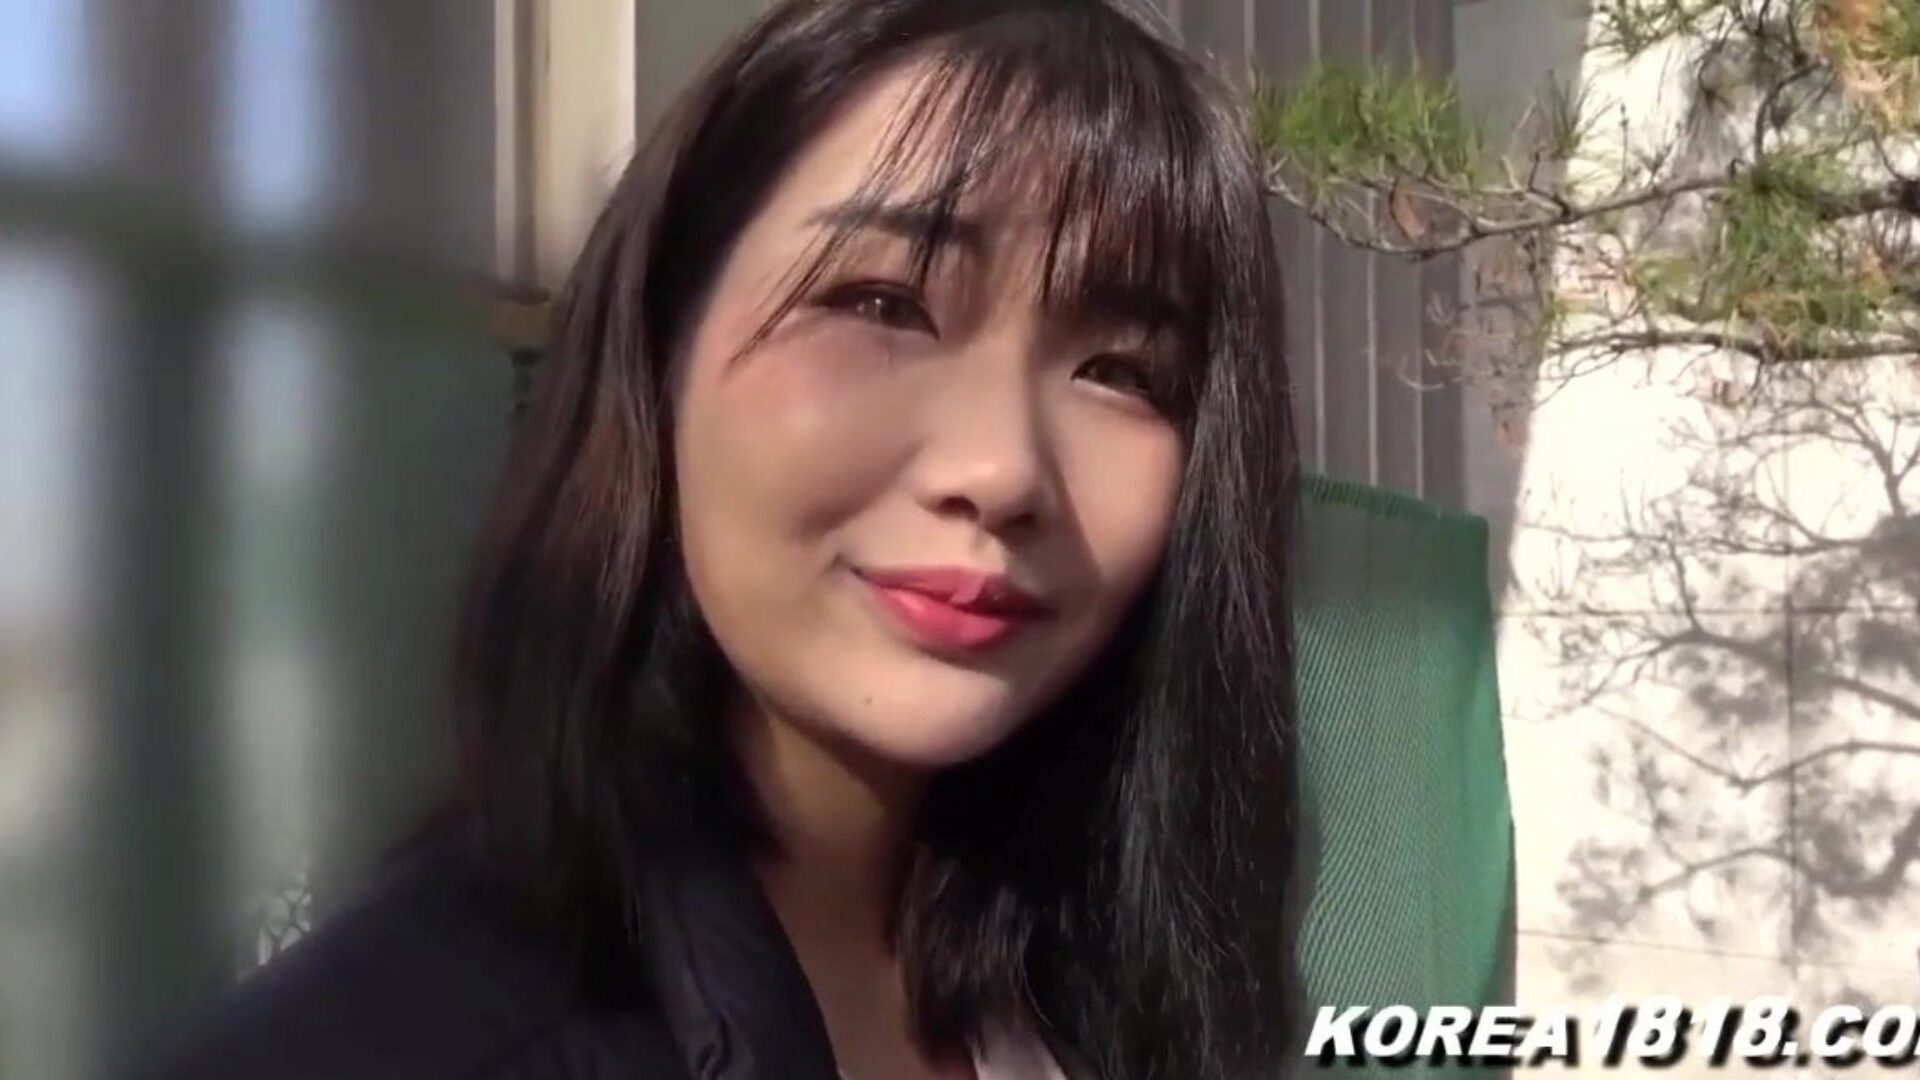 корейское порно супер горячая корейская шлюха получает стучал